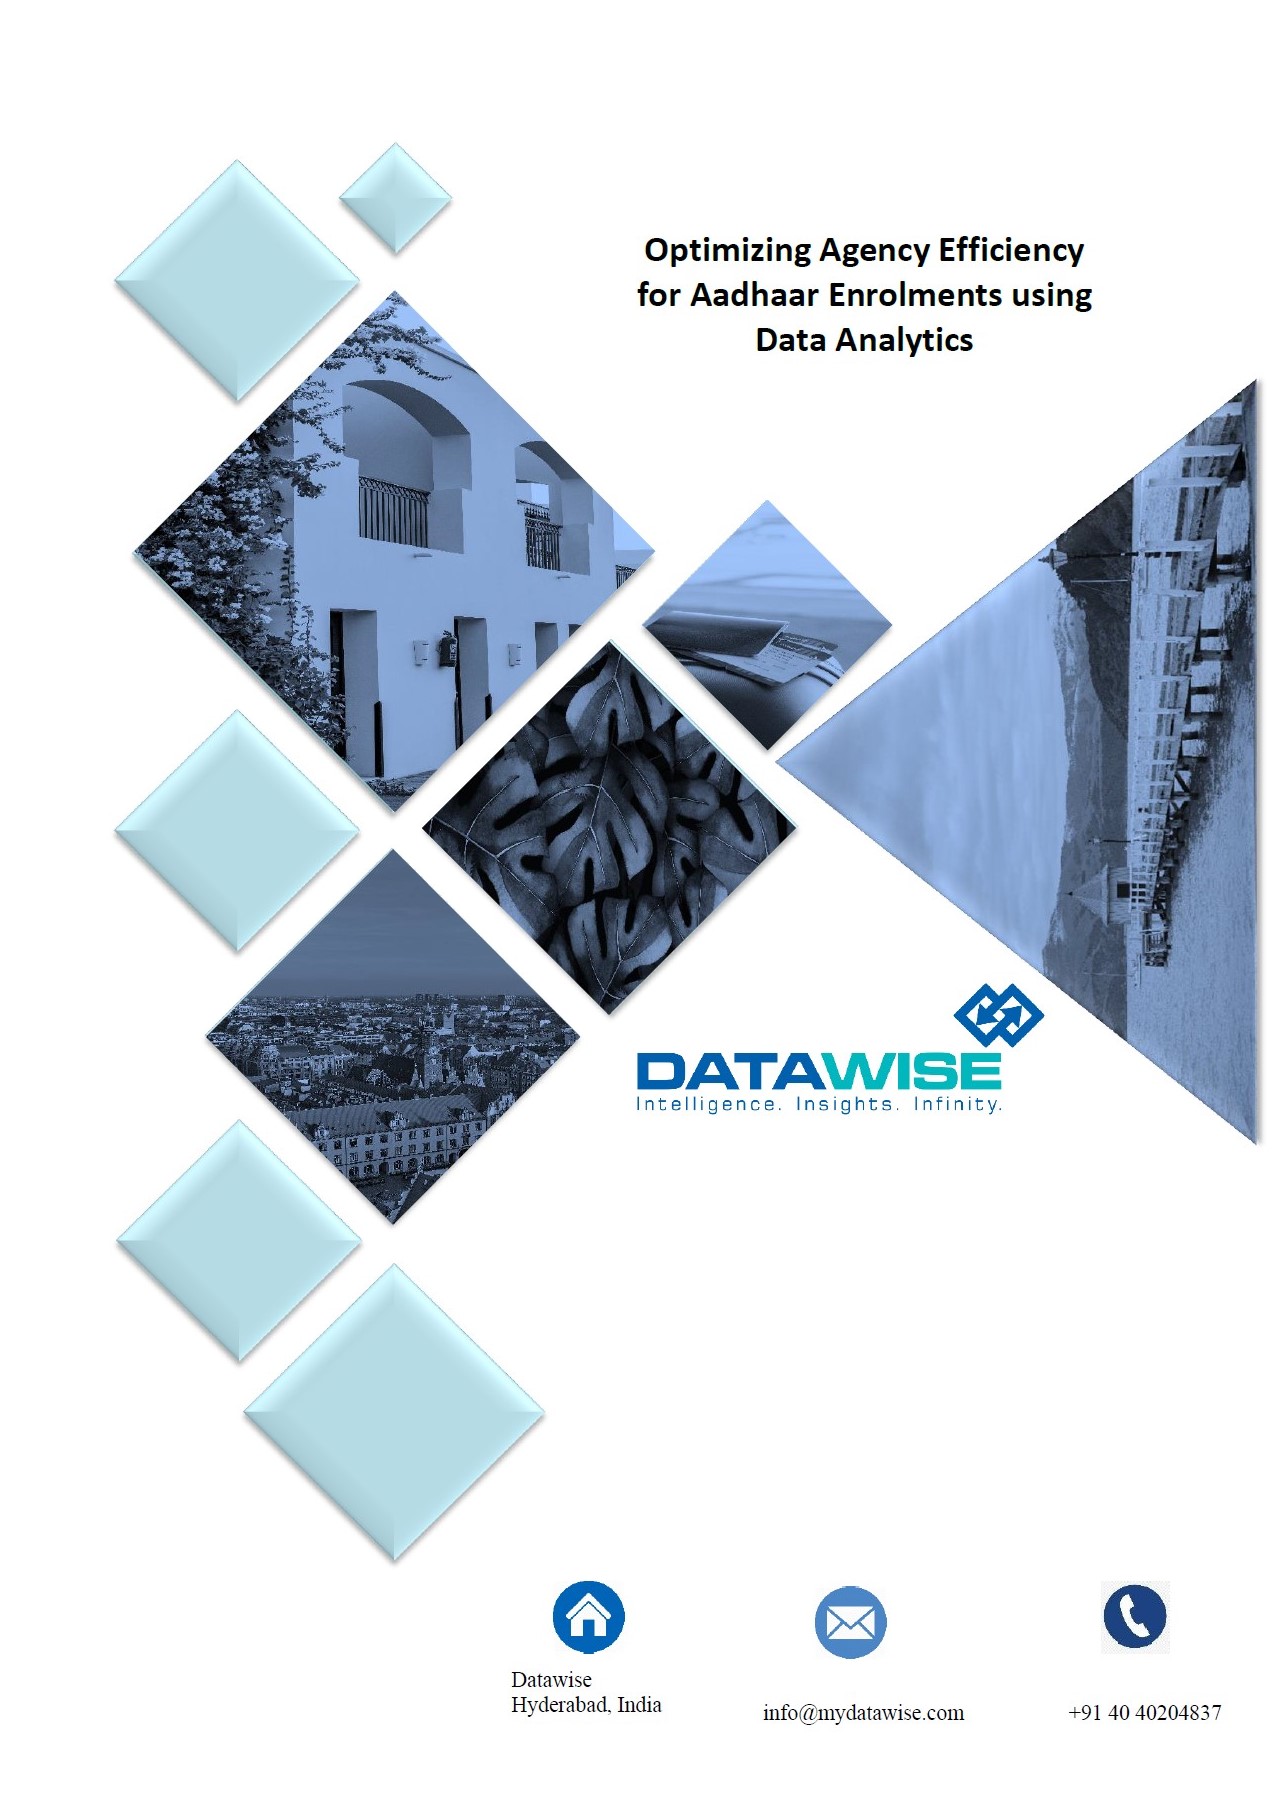 Optimizing Agency Efficiency for Aadhaar Enrolments using Data Analytics